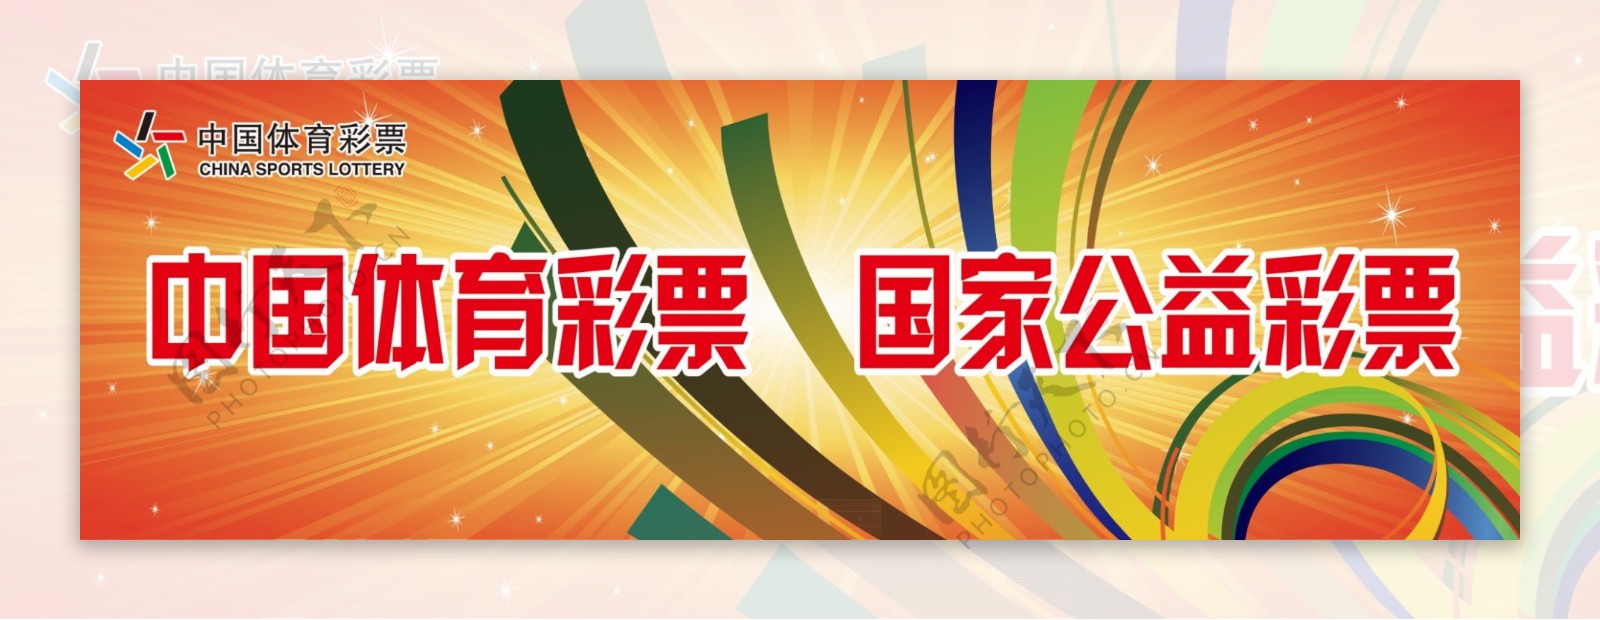 中国体育彩票展板图片